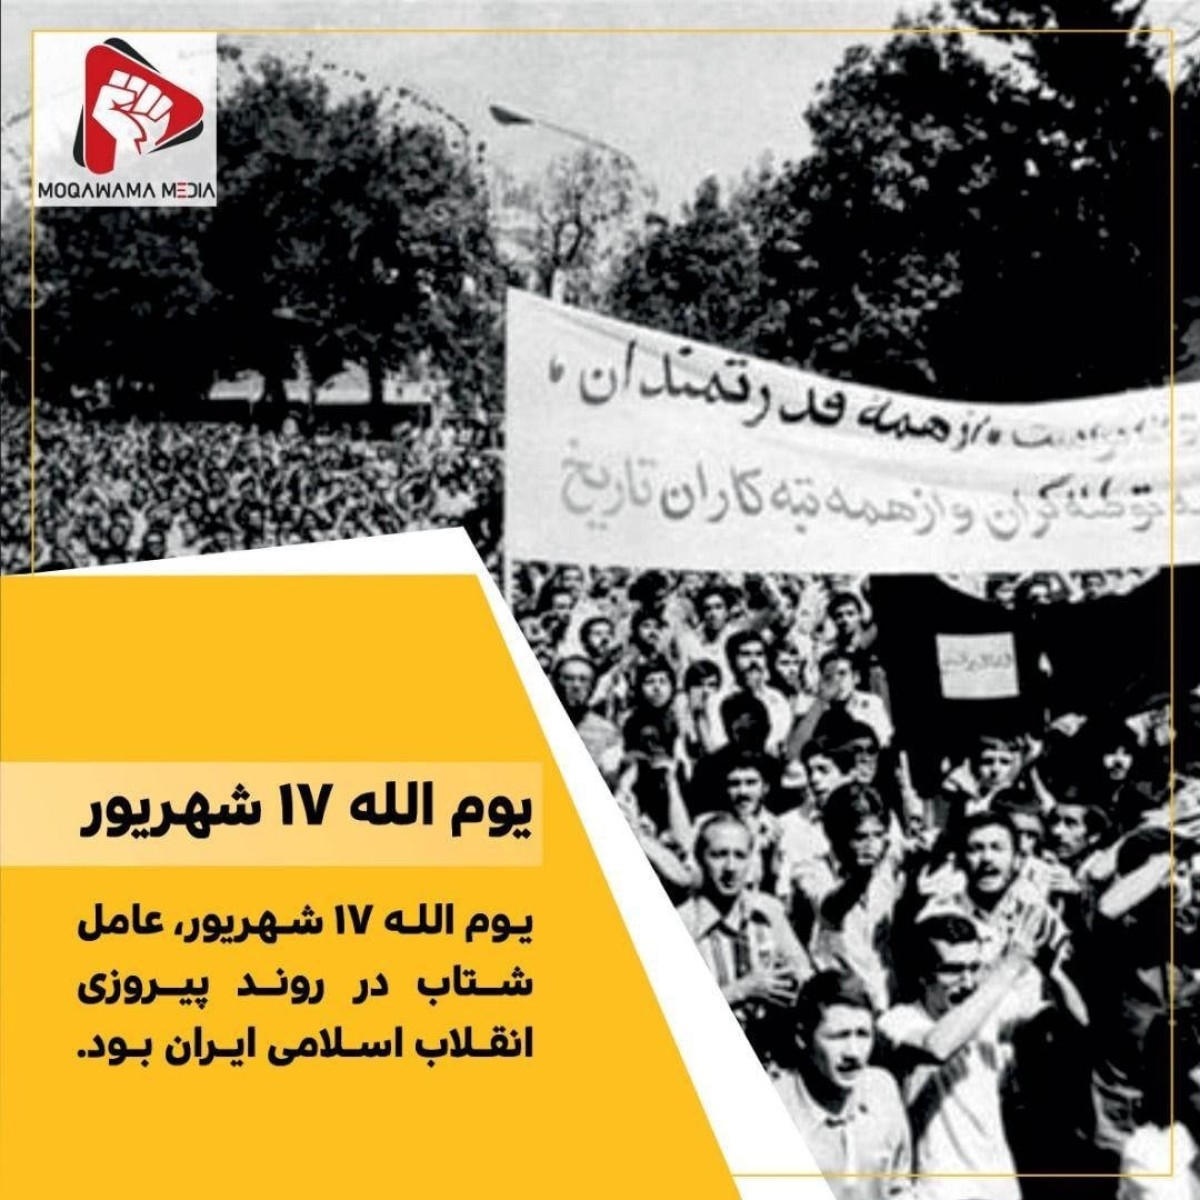 یوم الله 17 شهریور، عامل شتاب در روند پیروزی انقلاب اسلامی ایران بود.